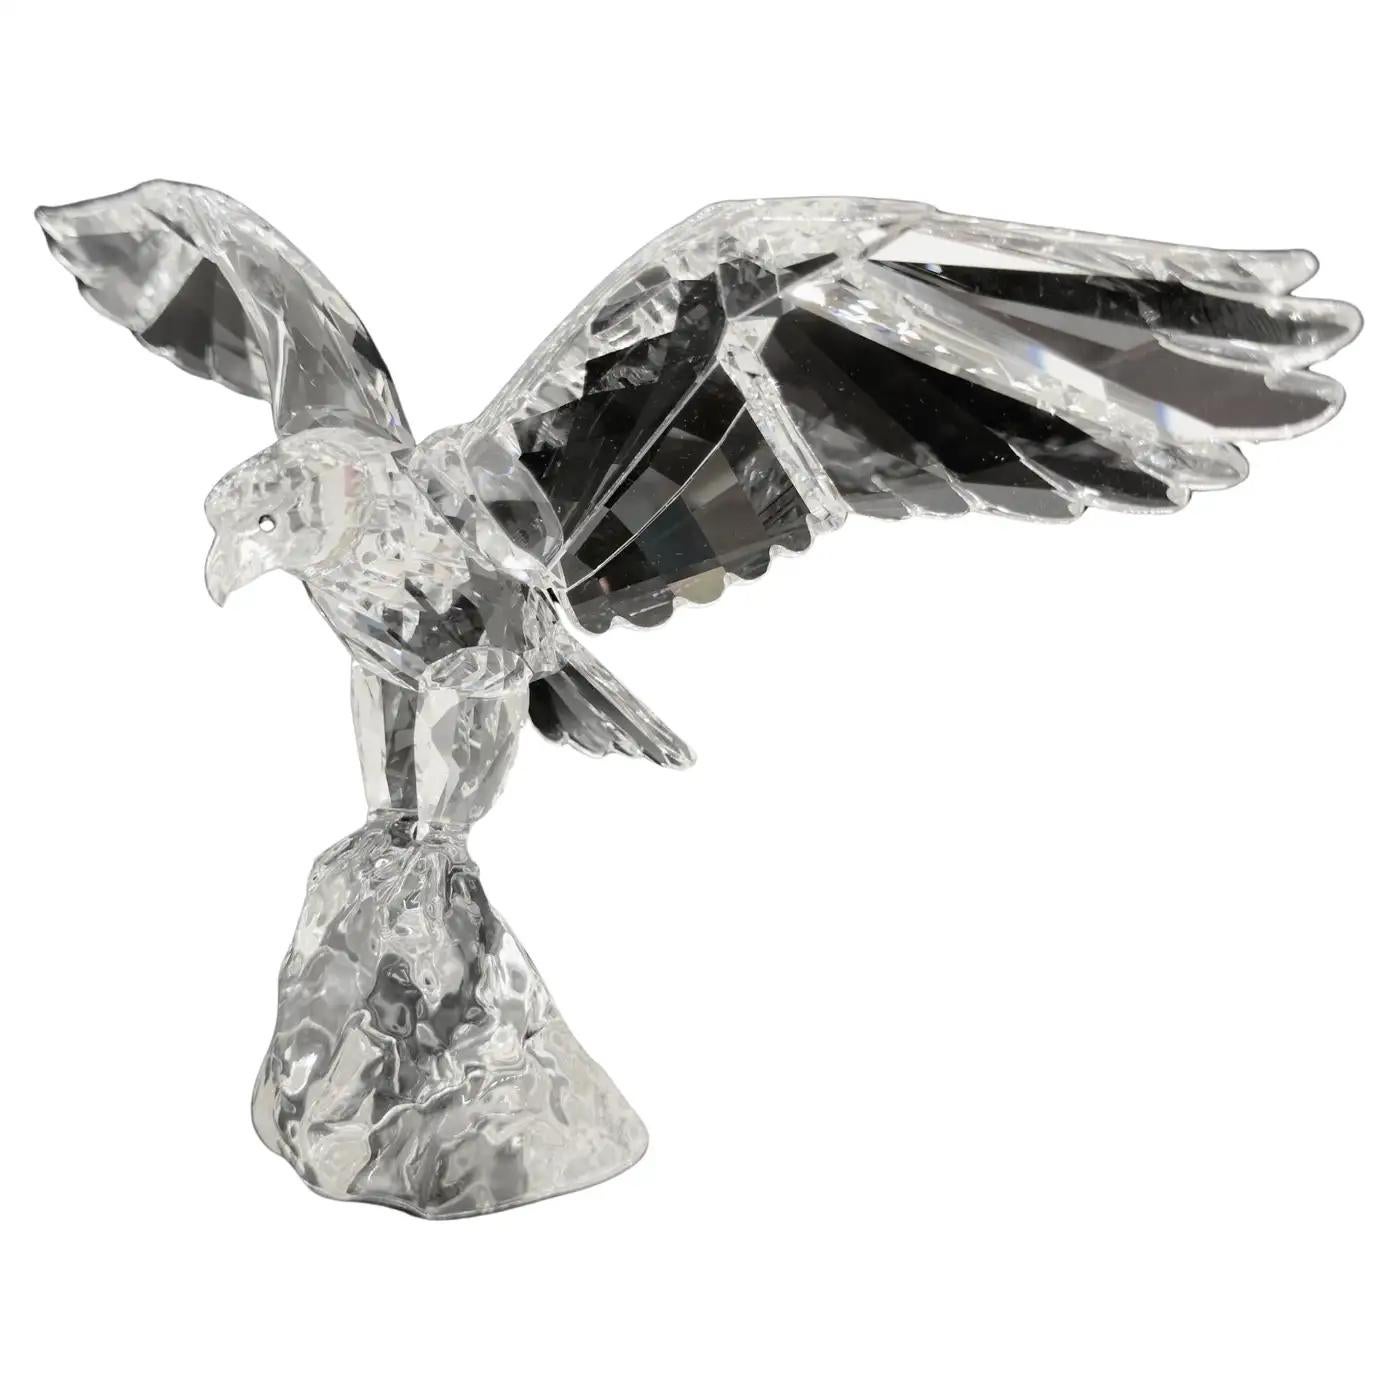 Figurine d'aigle Swarovski en cristal de haute qualité, conçue par Anton Hirzinger. Fabriquée en Australie, la figurine représente un aigle aux ailes déployées, prêt à prendre son envol.  Symbole de force et de liberté, cette rare sculpture d'aigle